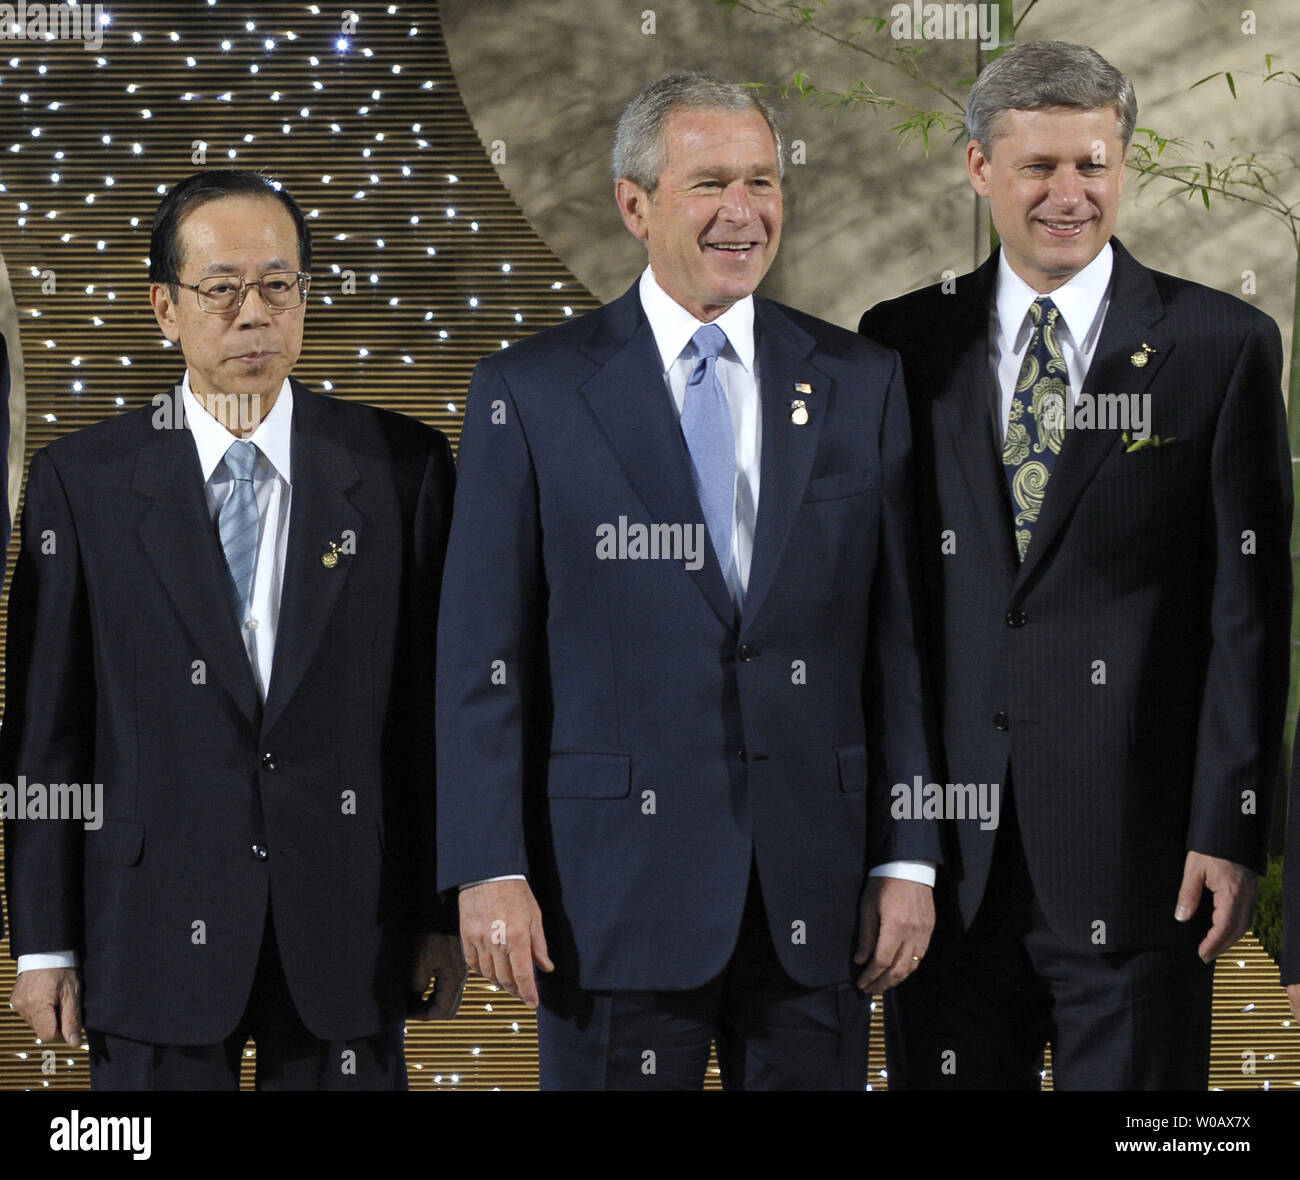 Us-Präsident George W. Bush (C), der japanische Premierminister Yasuo Fukuda und der kanadische Premierminister Stephen Harper (R) posieren für ein Gruppenfoto zu einem tanabata Zeremonie auf dem G8-Gipfel in Toyako auf Hokkaido Toyako, Japan am 7. Juli 2008. (UPI Foto/Alex Volgin). Stockfoto